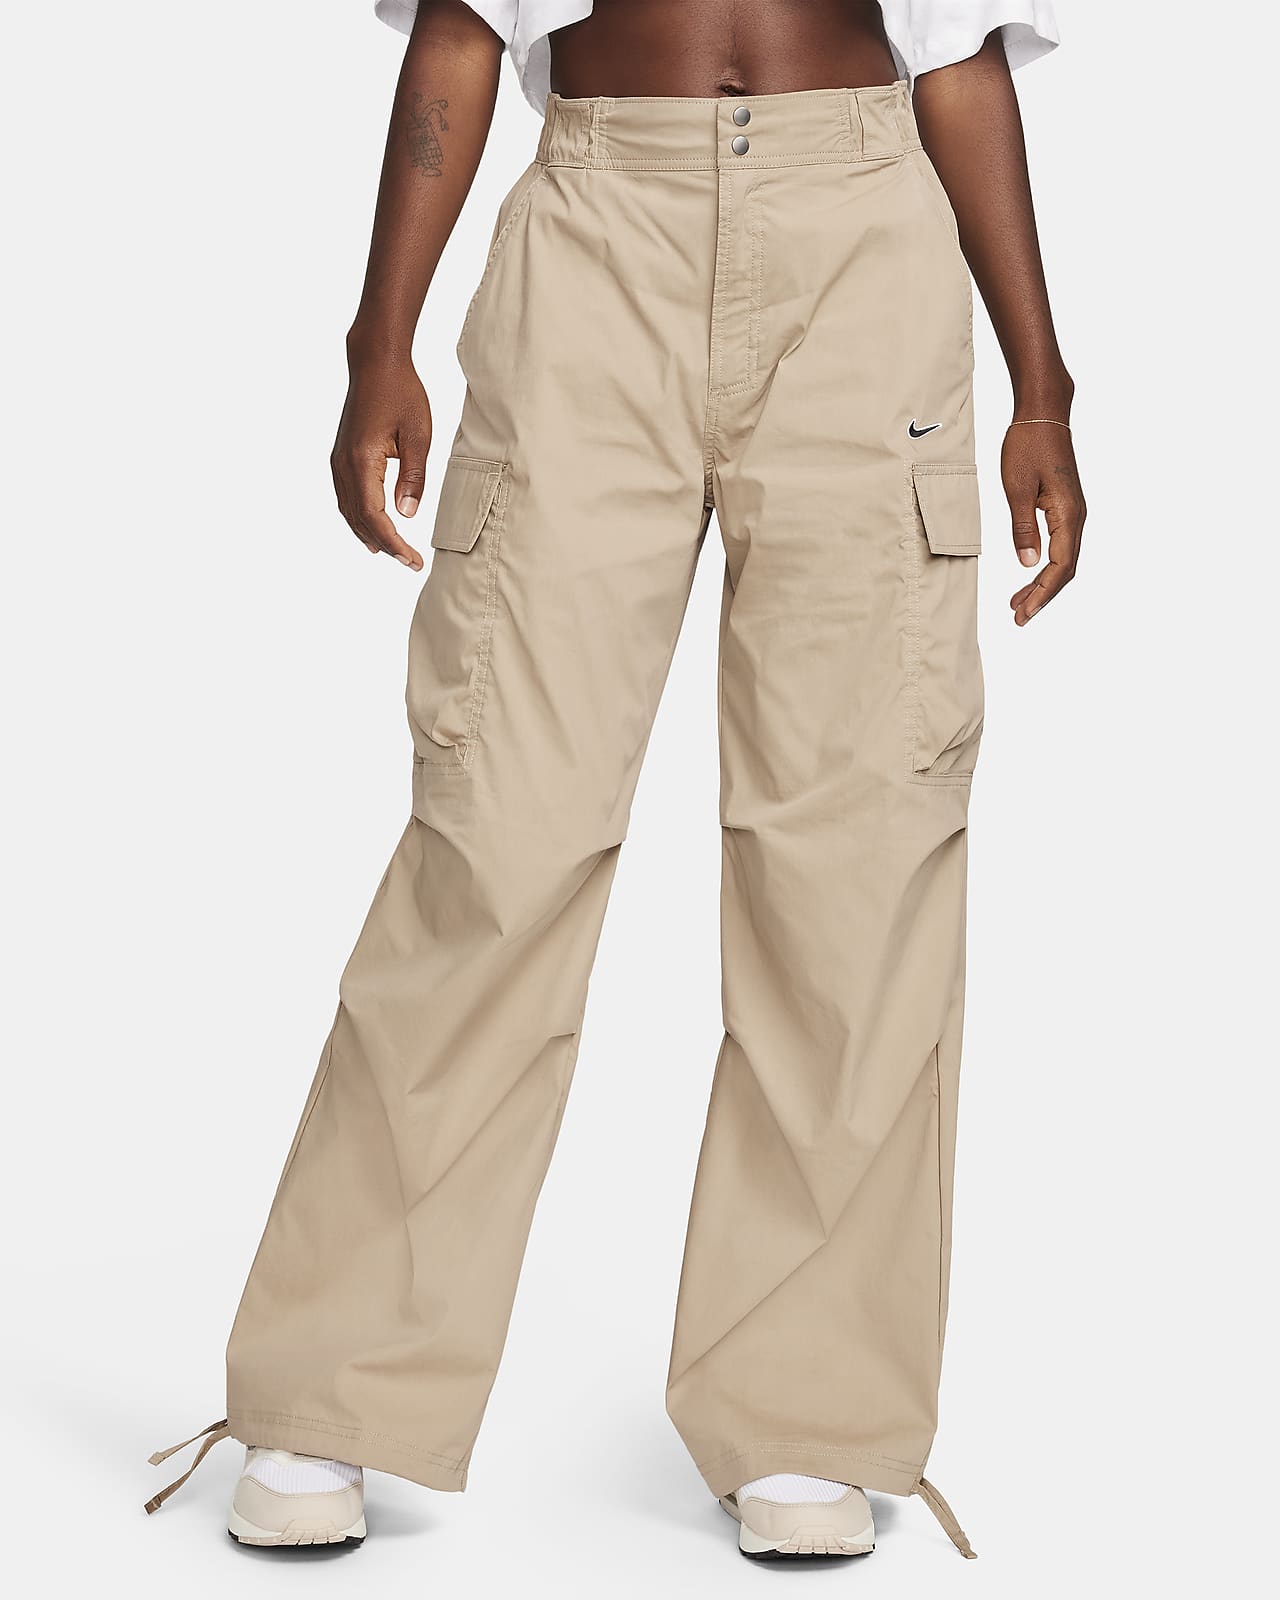 Yoga Cargo Pants-women's Pants-cargo Pants-full Length Pants-wide Leg  Pants-high Waisted Pants-fold Over Yoga Pants-green Cotton Pants-pants -   Sweden